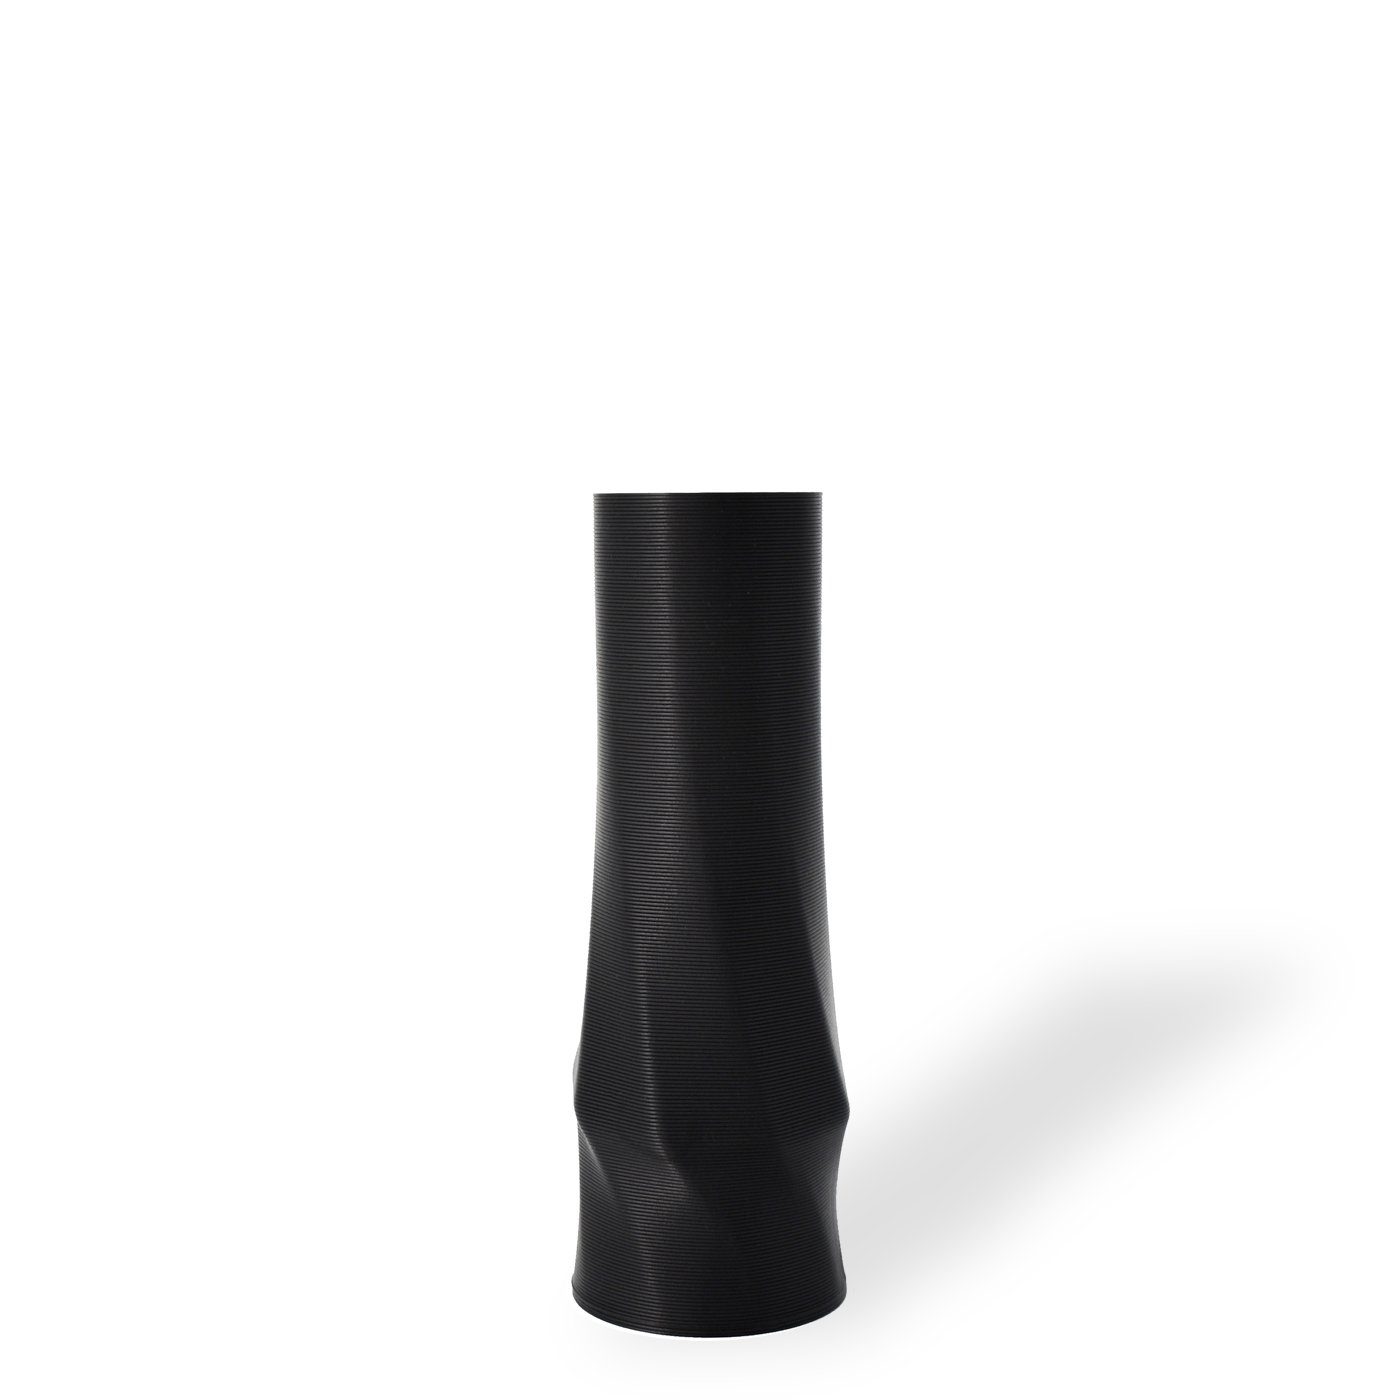 Shapes - Decorations Dekovase the vase - circle (basic), 3D Vasen, viele Farben, 100% 3D-Druck (Einzelmodell, 1 Vase), Wasserdicht; Leichte Struktur innerhalb des Materials (Rillung) Schwarz | Dekovasen